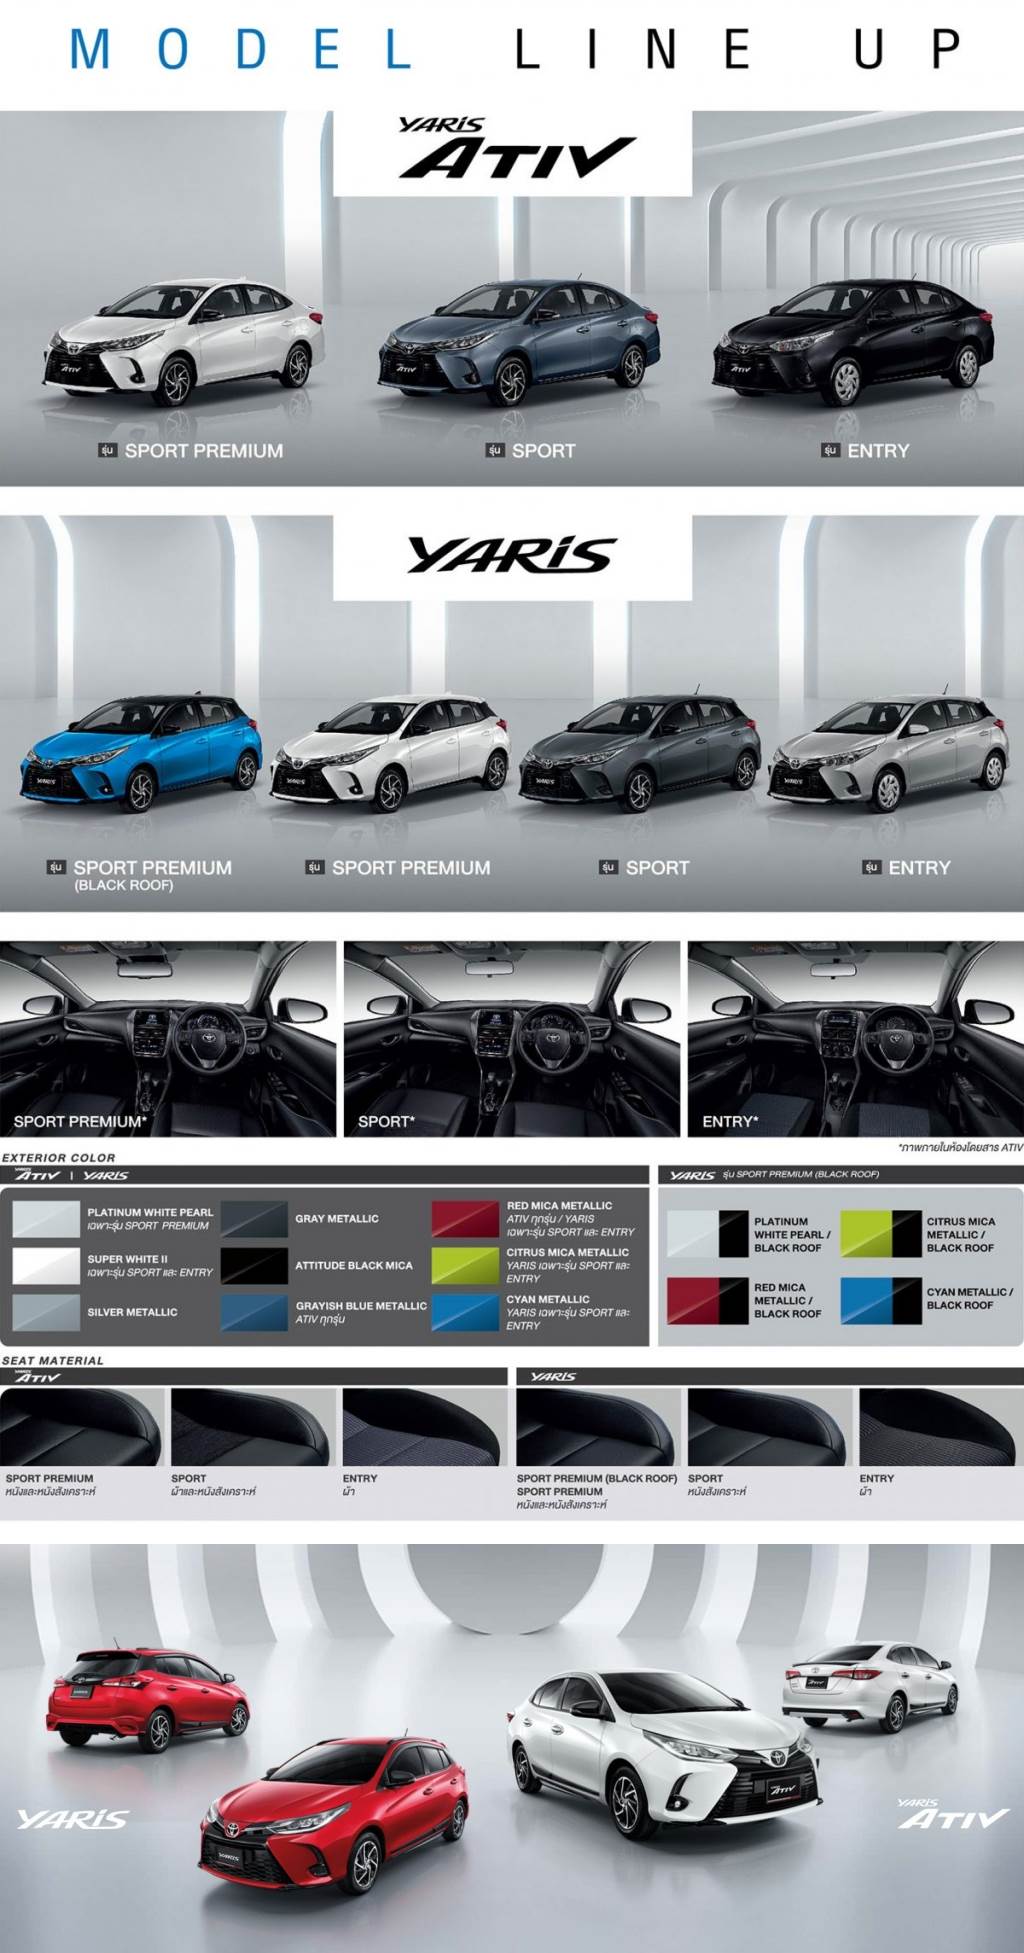 導入 Toyota Safety Sense 主動安全系統，Toyota Yaris/Yaris Ativ 二度小改款泰國亮相